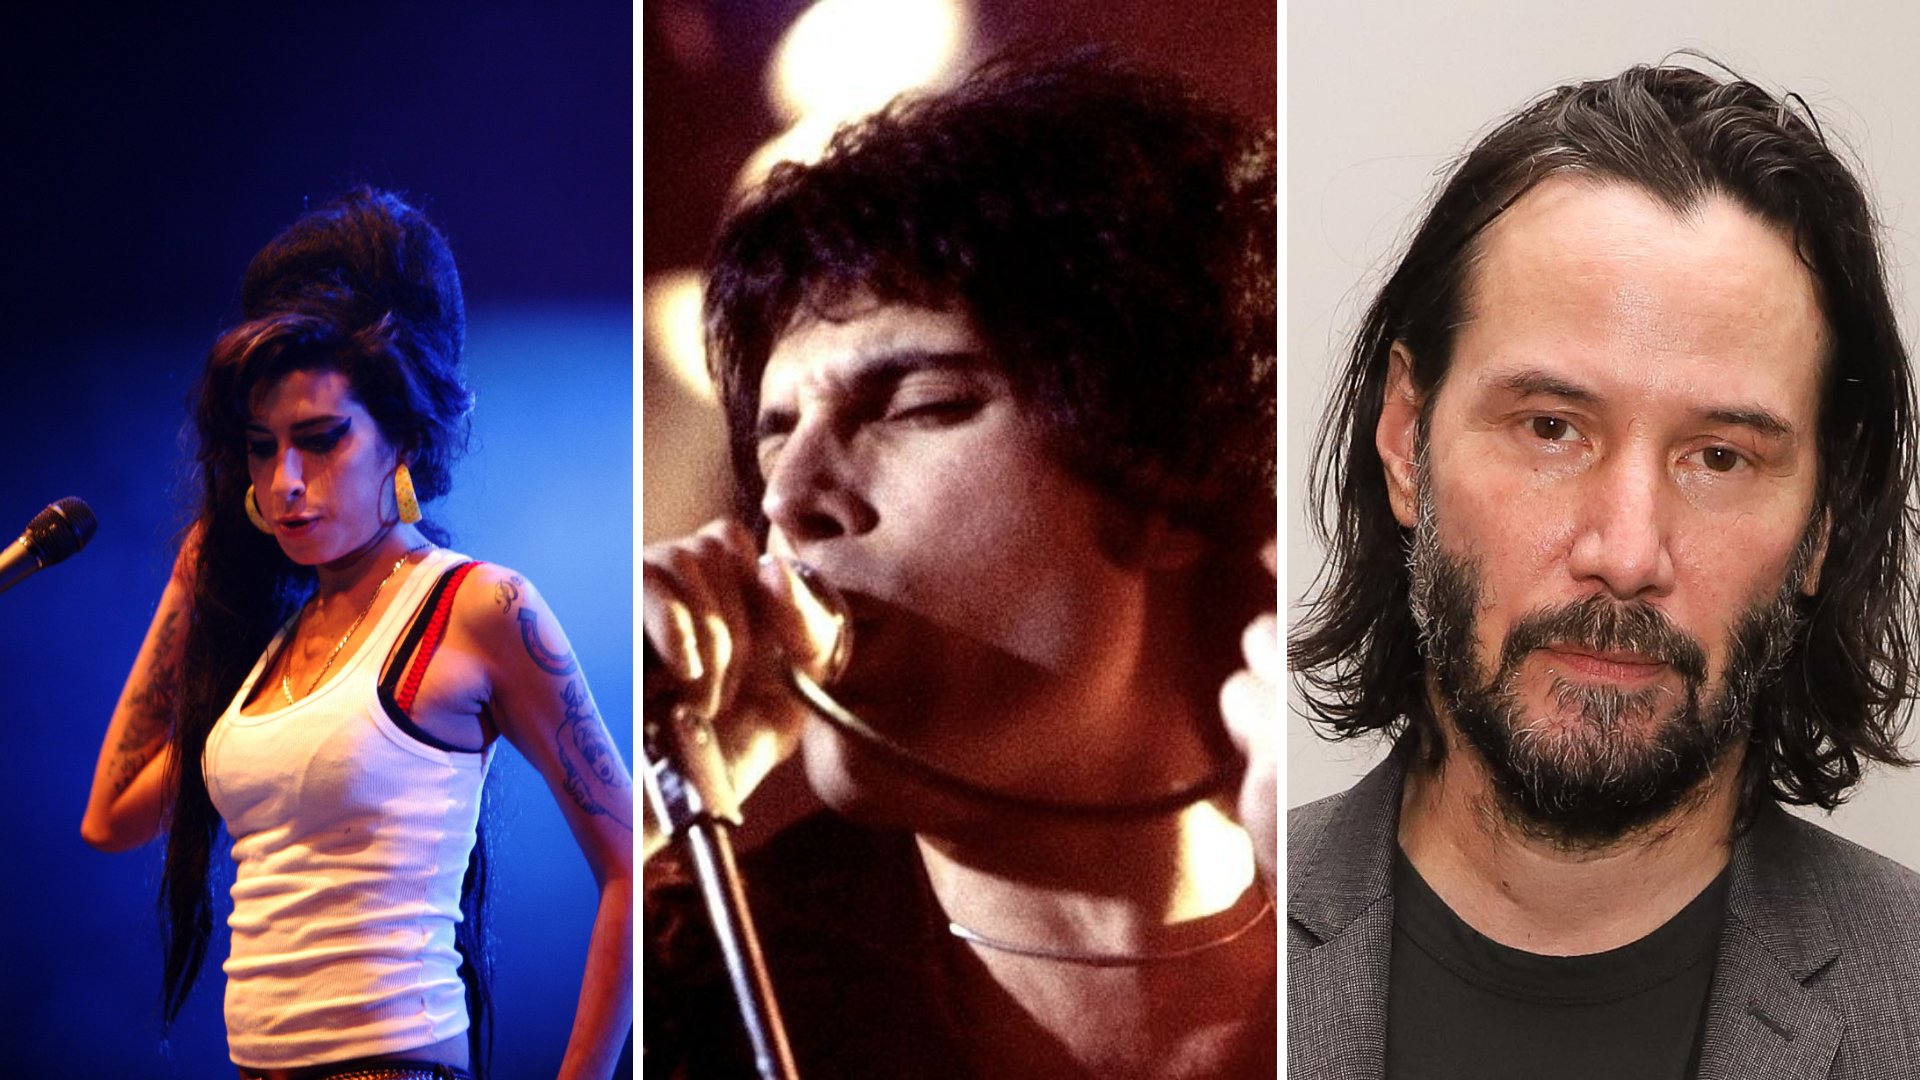 Imagem em grid da cantora Amy Winehouse, do cantor Freddie Mercury e do ator Keanu Reeves